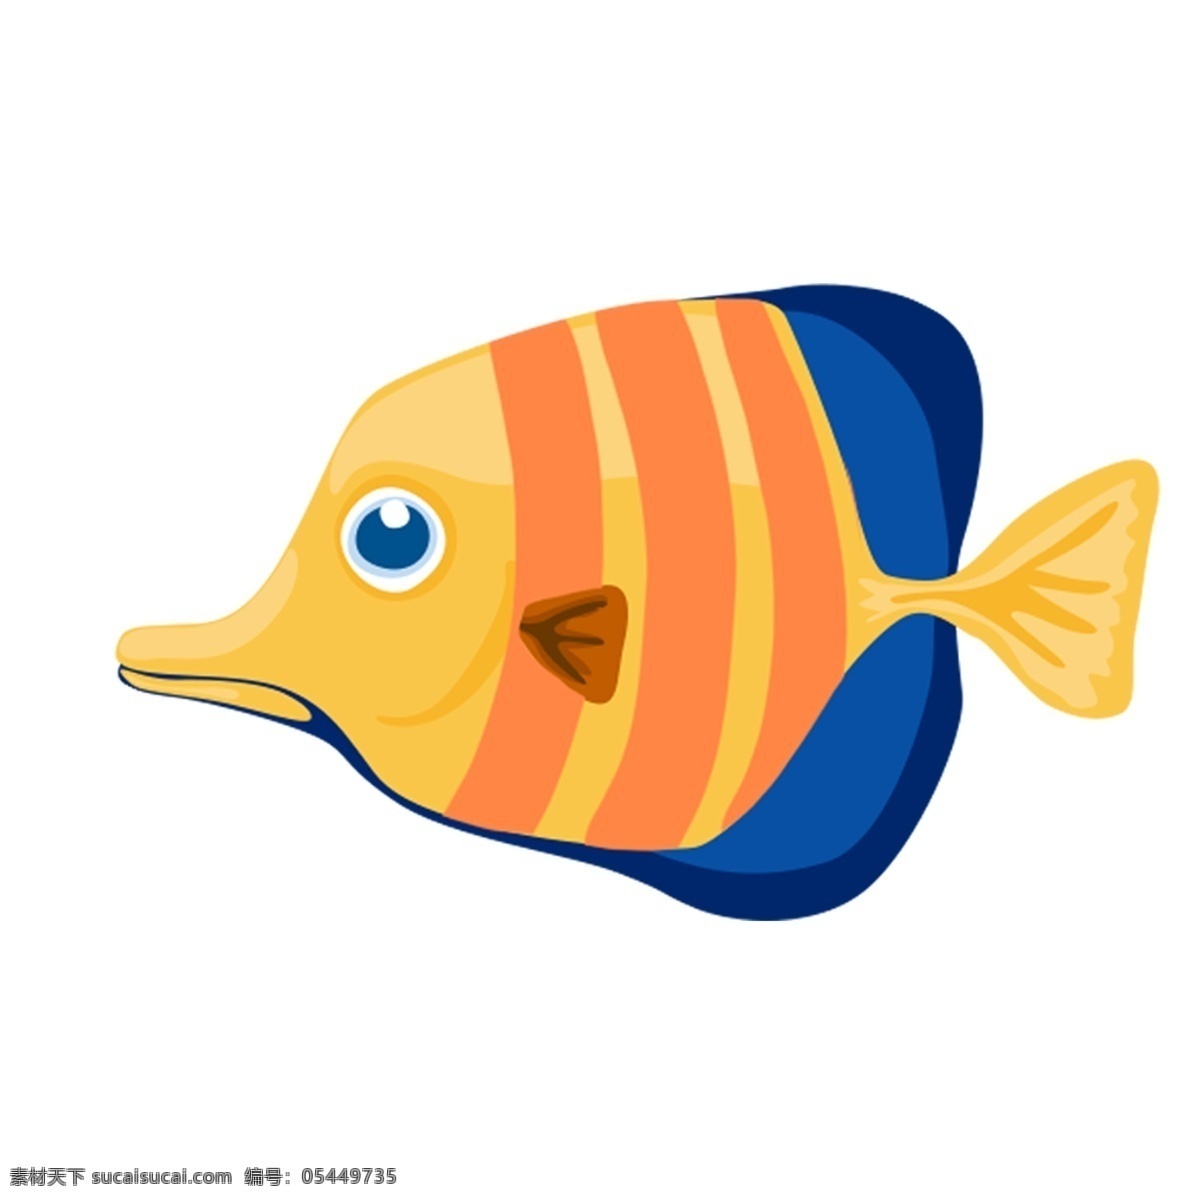 深海鱼 动物 插画 图案 鱼 热带鱼 卡通 彩色 小清新 创意 手绘 绘画元素 现代 简约 装饰